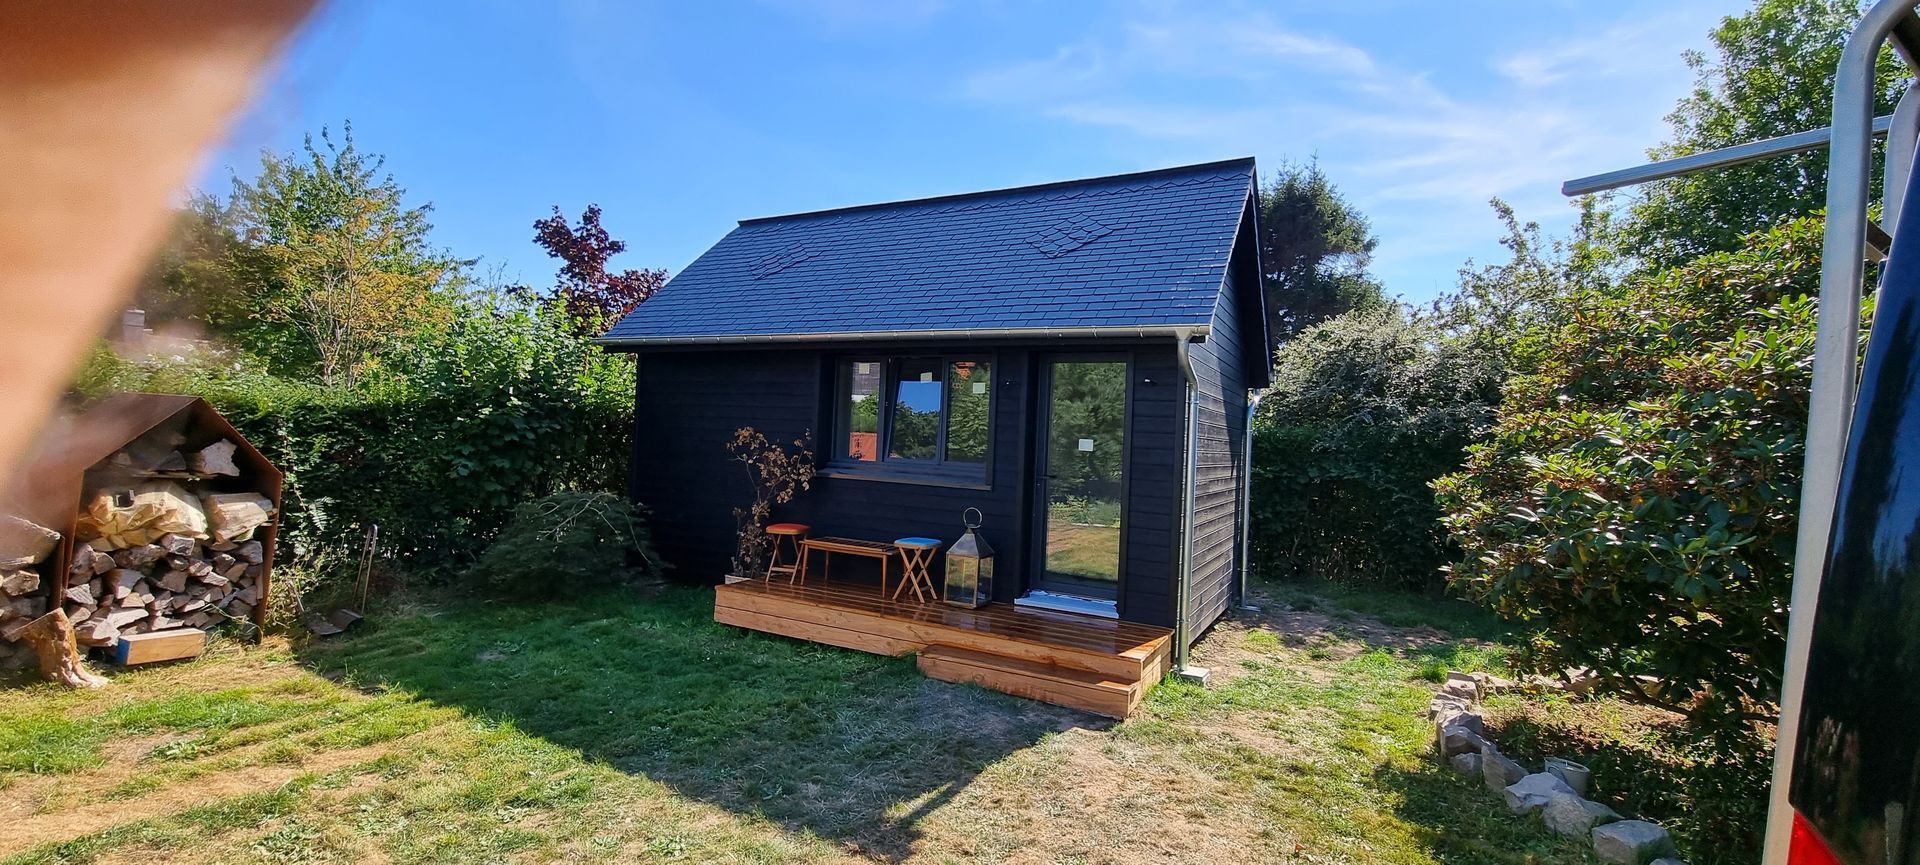 Petite maison noire en bois dans un jardin